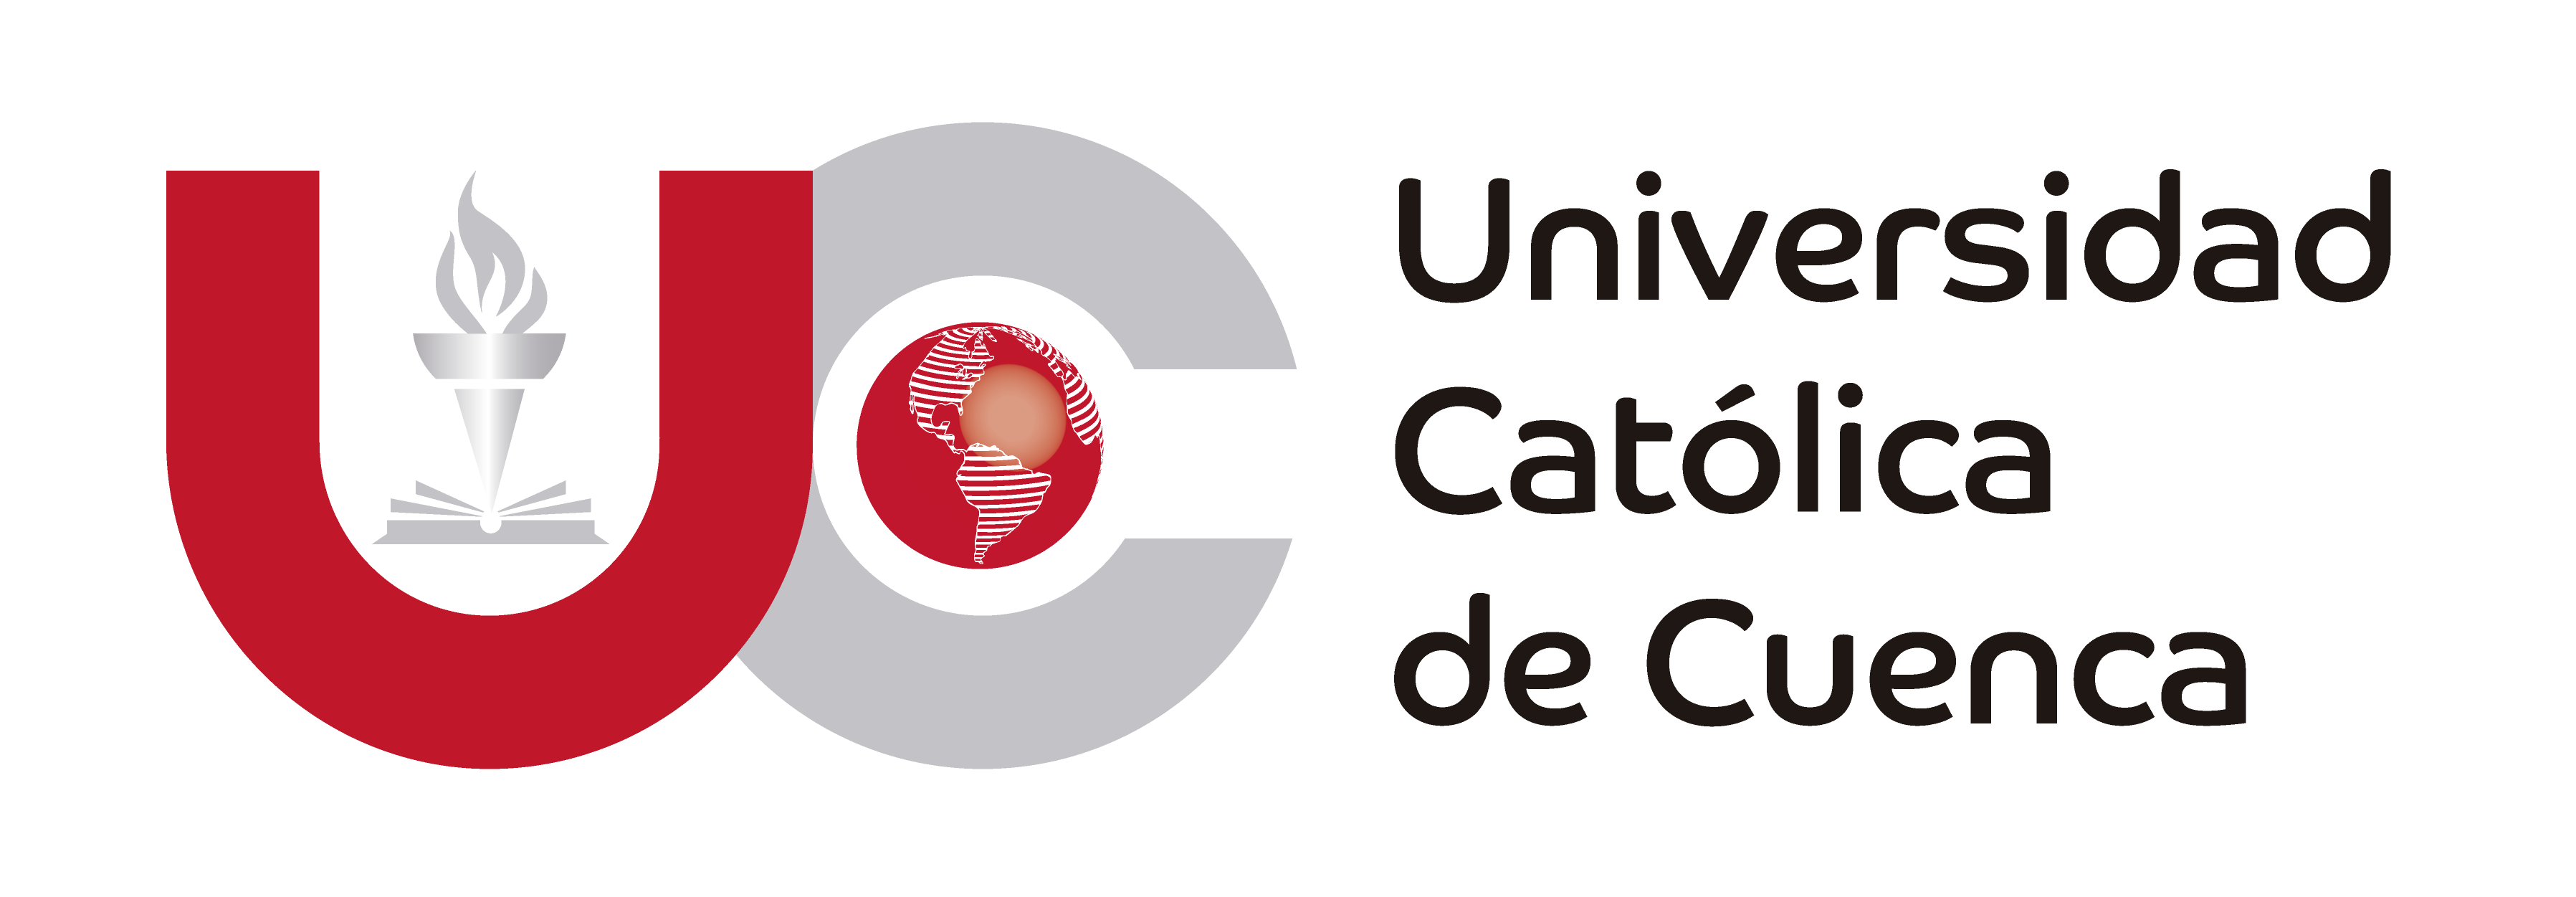 Католический университет в Куэнке